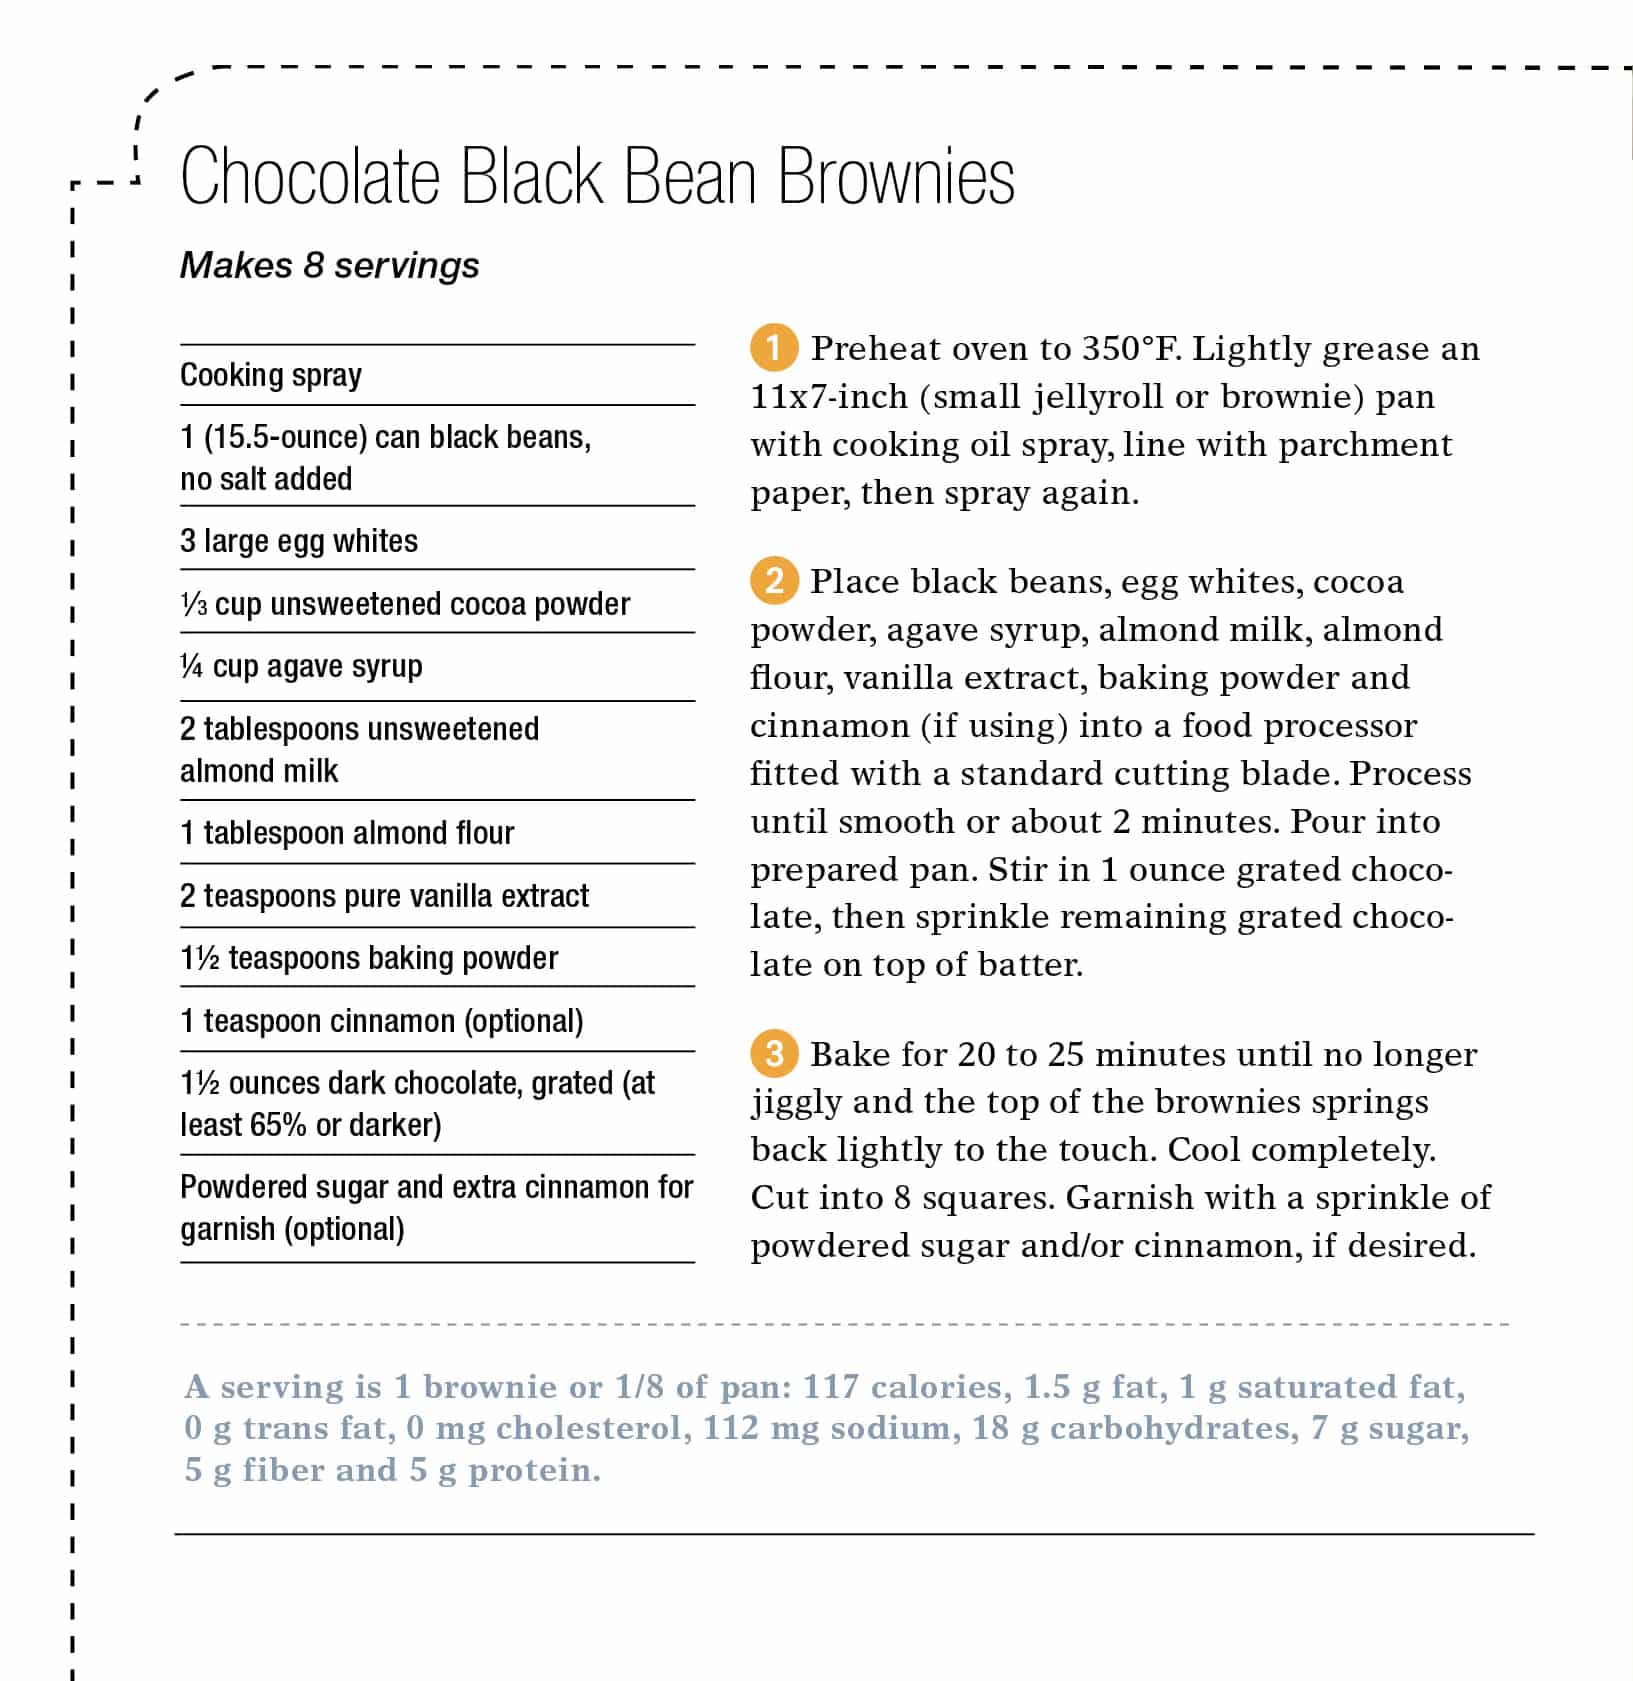 Chocolate Black Bean Brownies